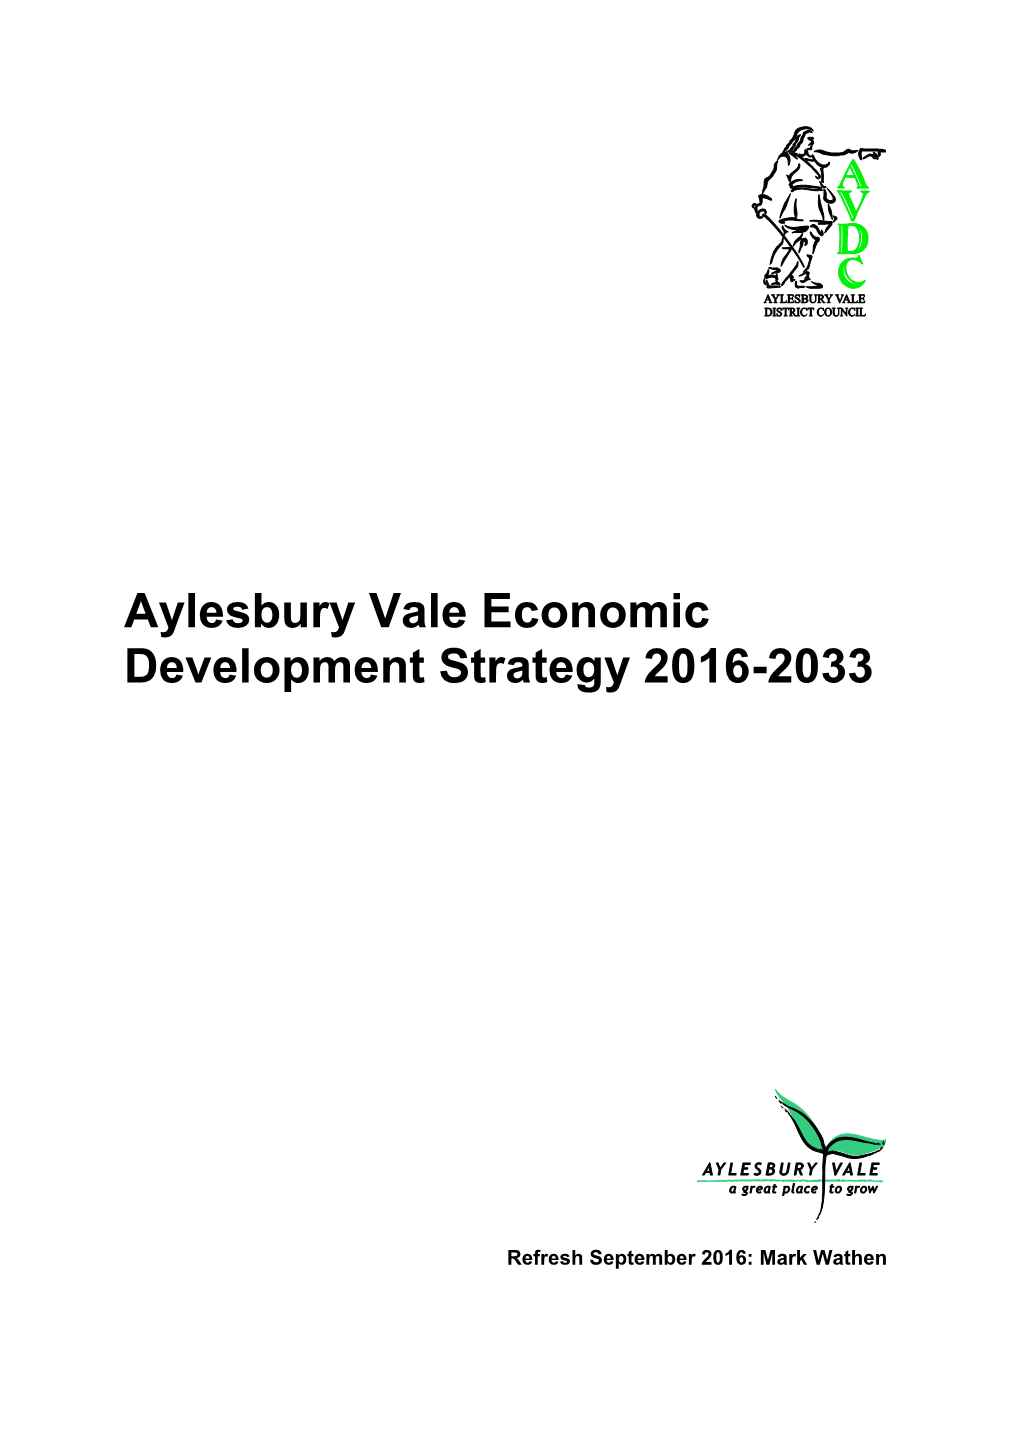 Aylesbury Vale Economic Development Strategy 2016-2033